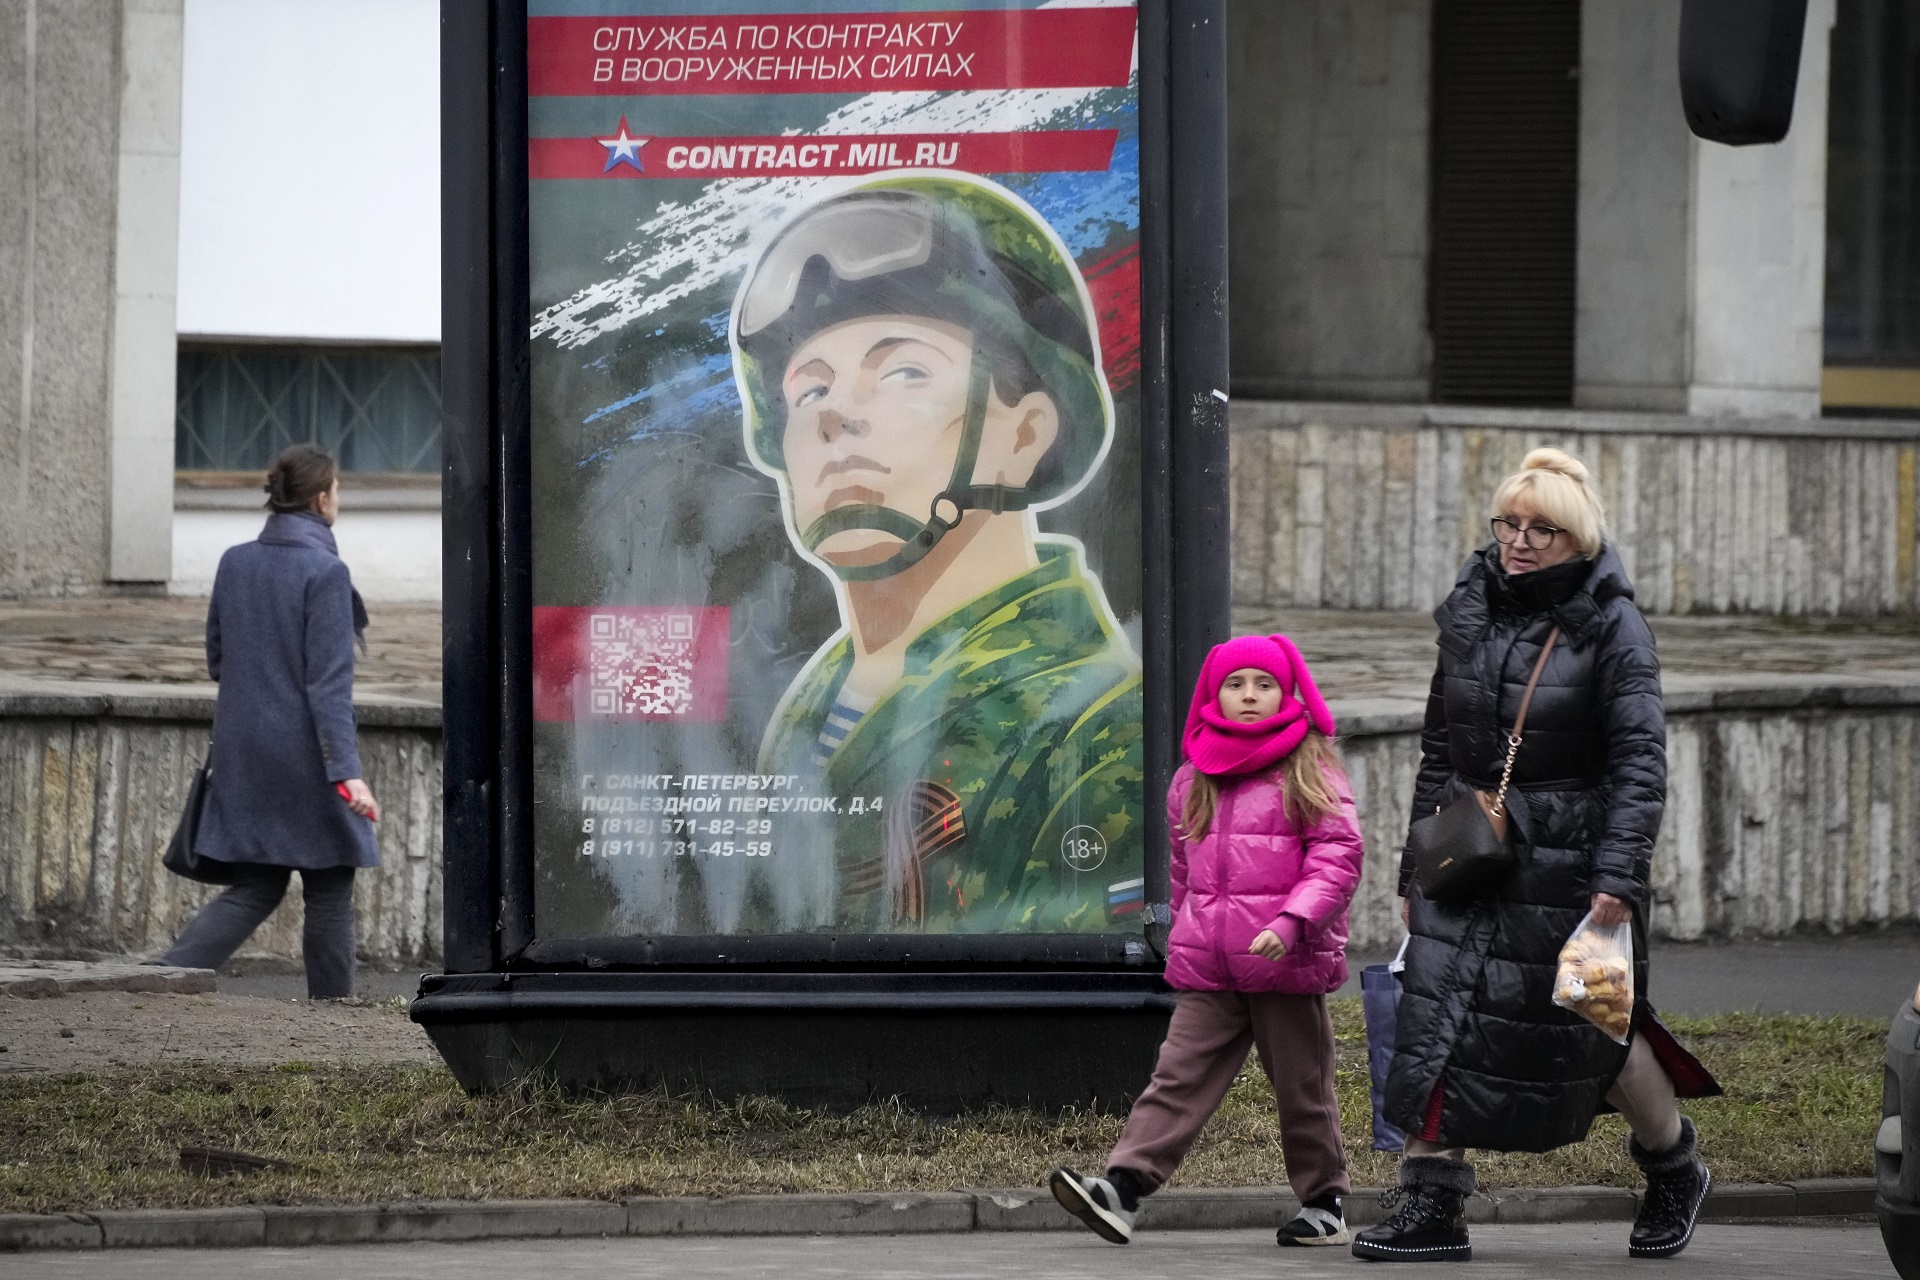 Cómo es la nueva campaña del Kremlin para reclutar combatientes: ofrecen primas en efectivo, beneficios familiares y promesas tentadoras 